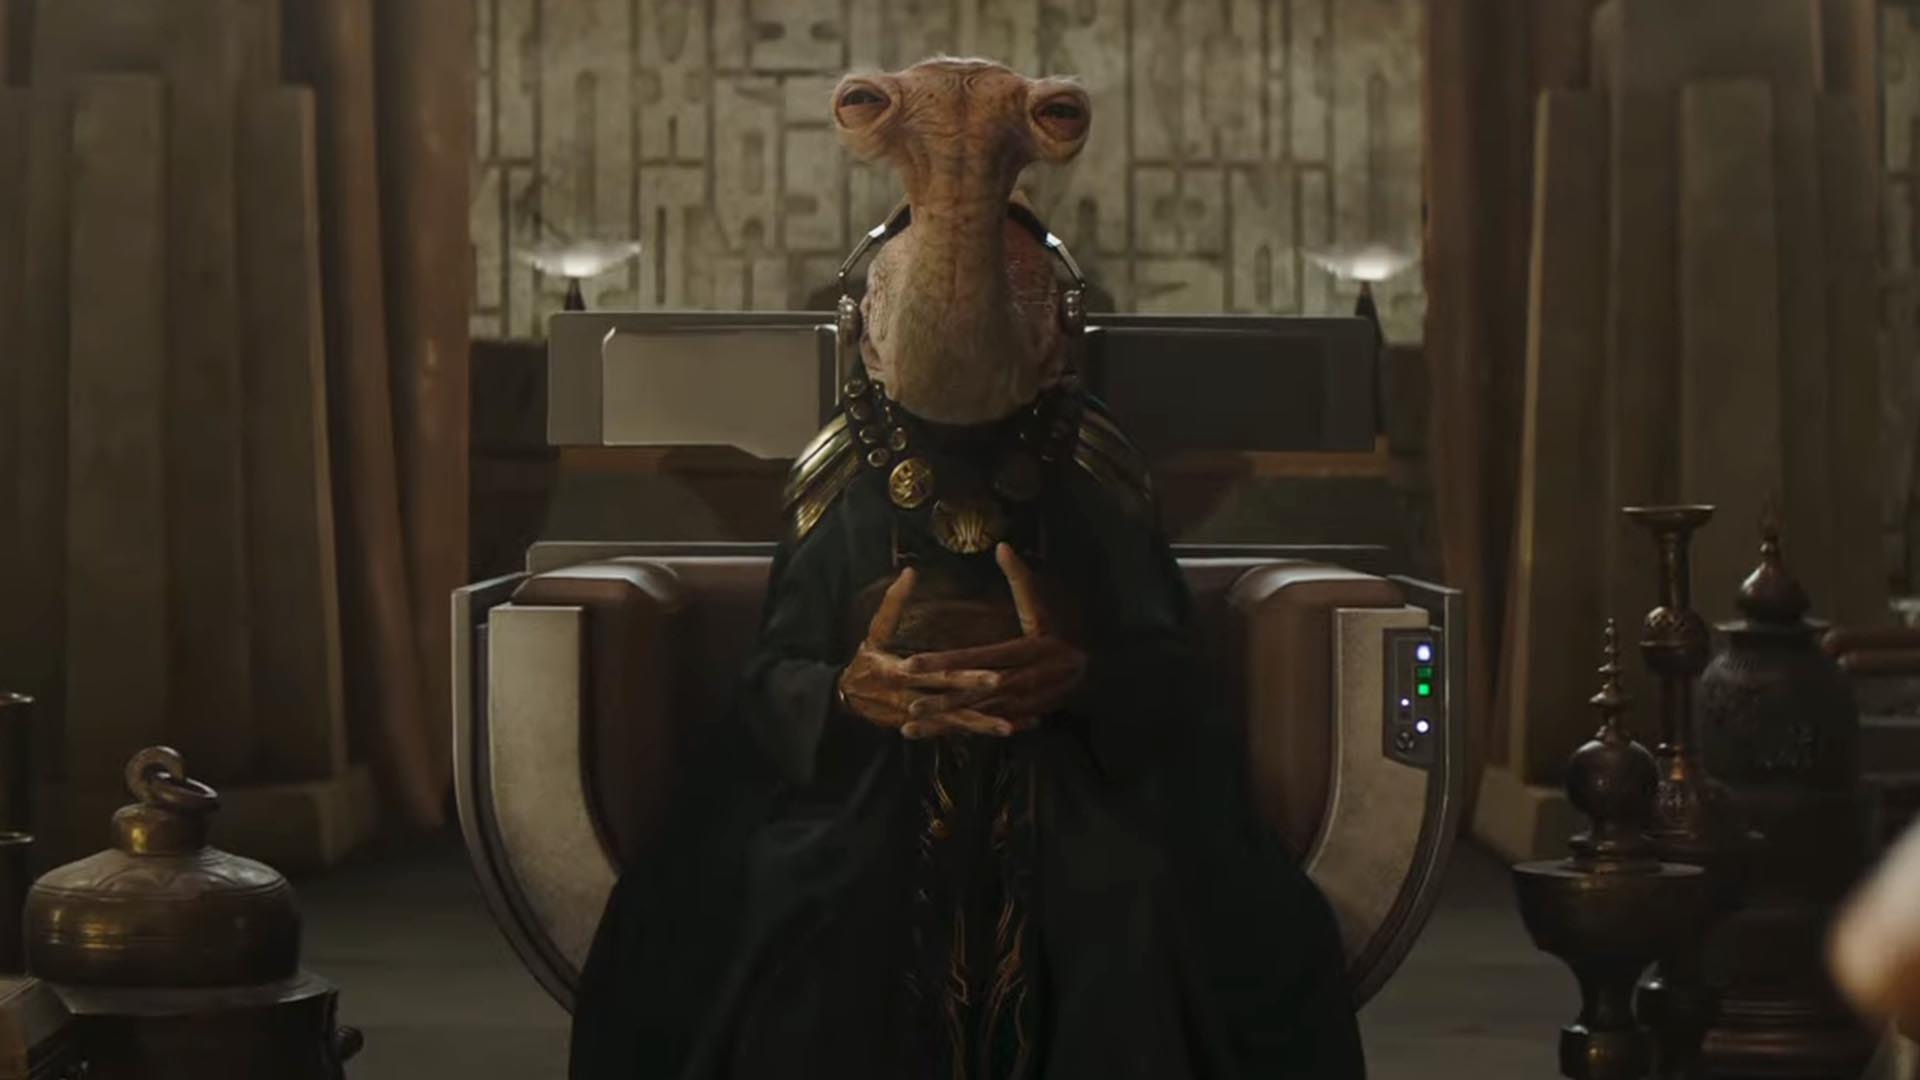 Star Wars - Pedro Pascal hat einen Cameo im Trailer von Boba Fett laut Fans